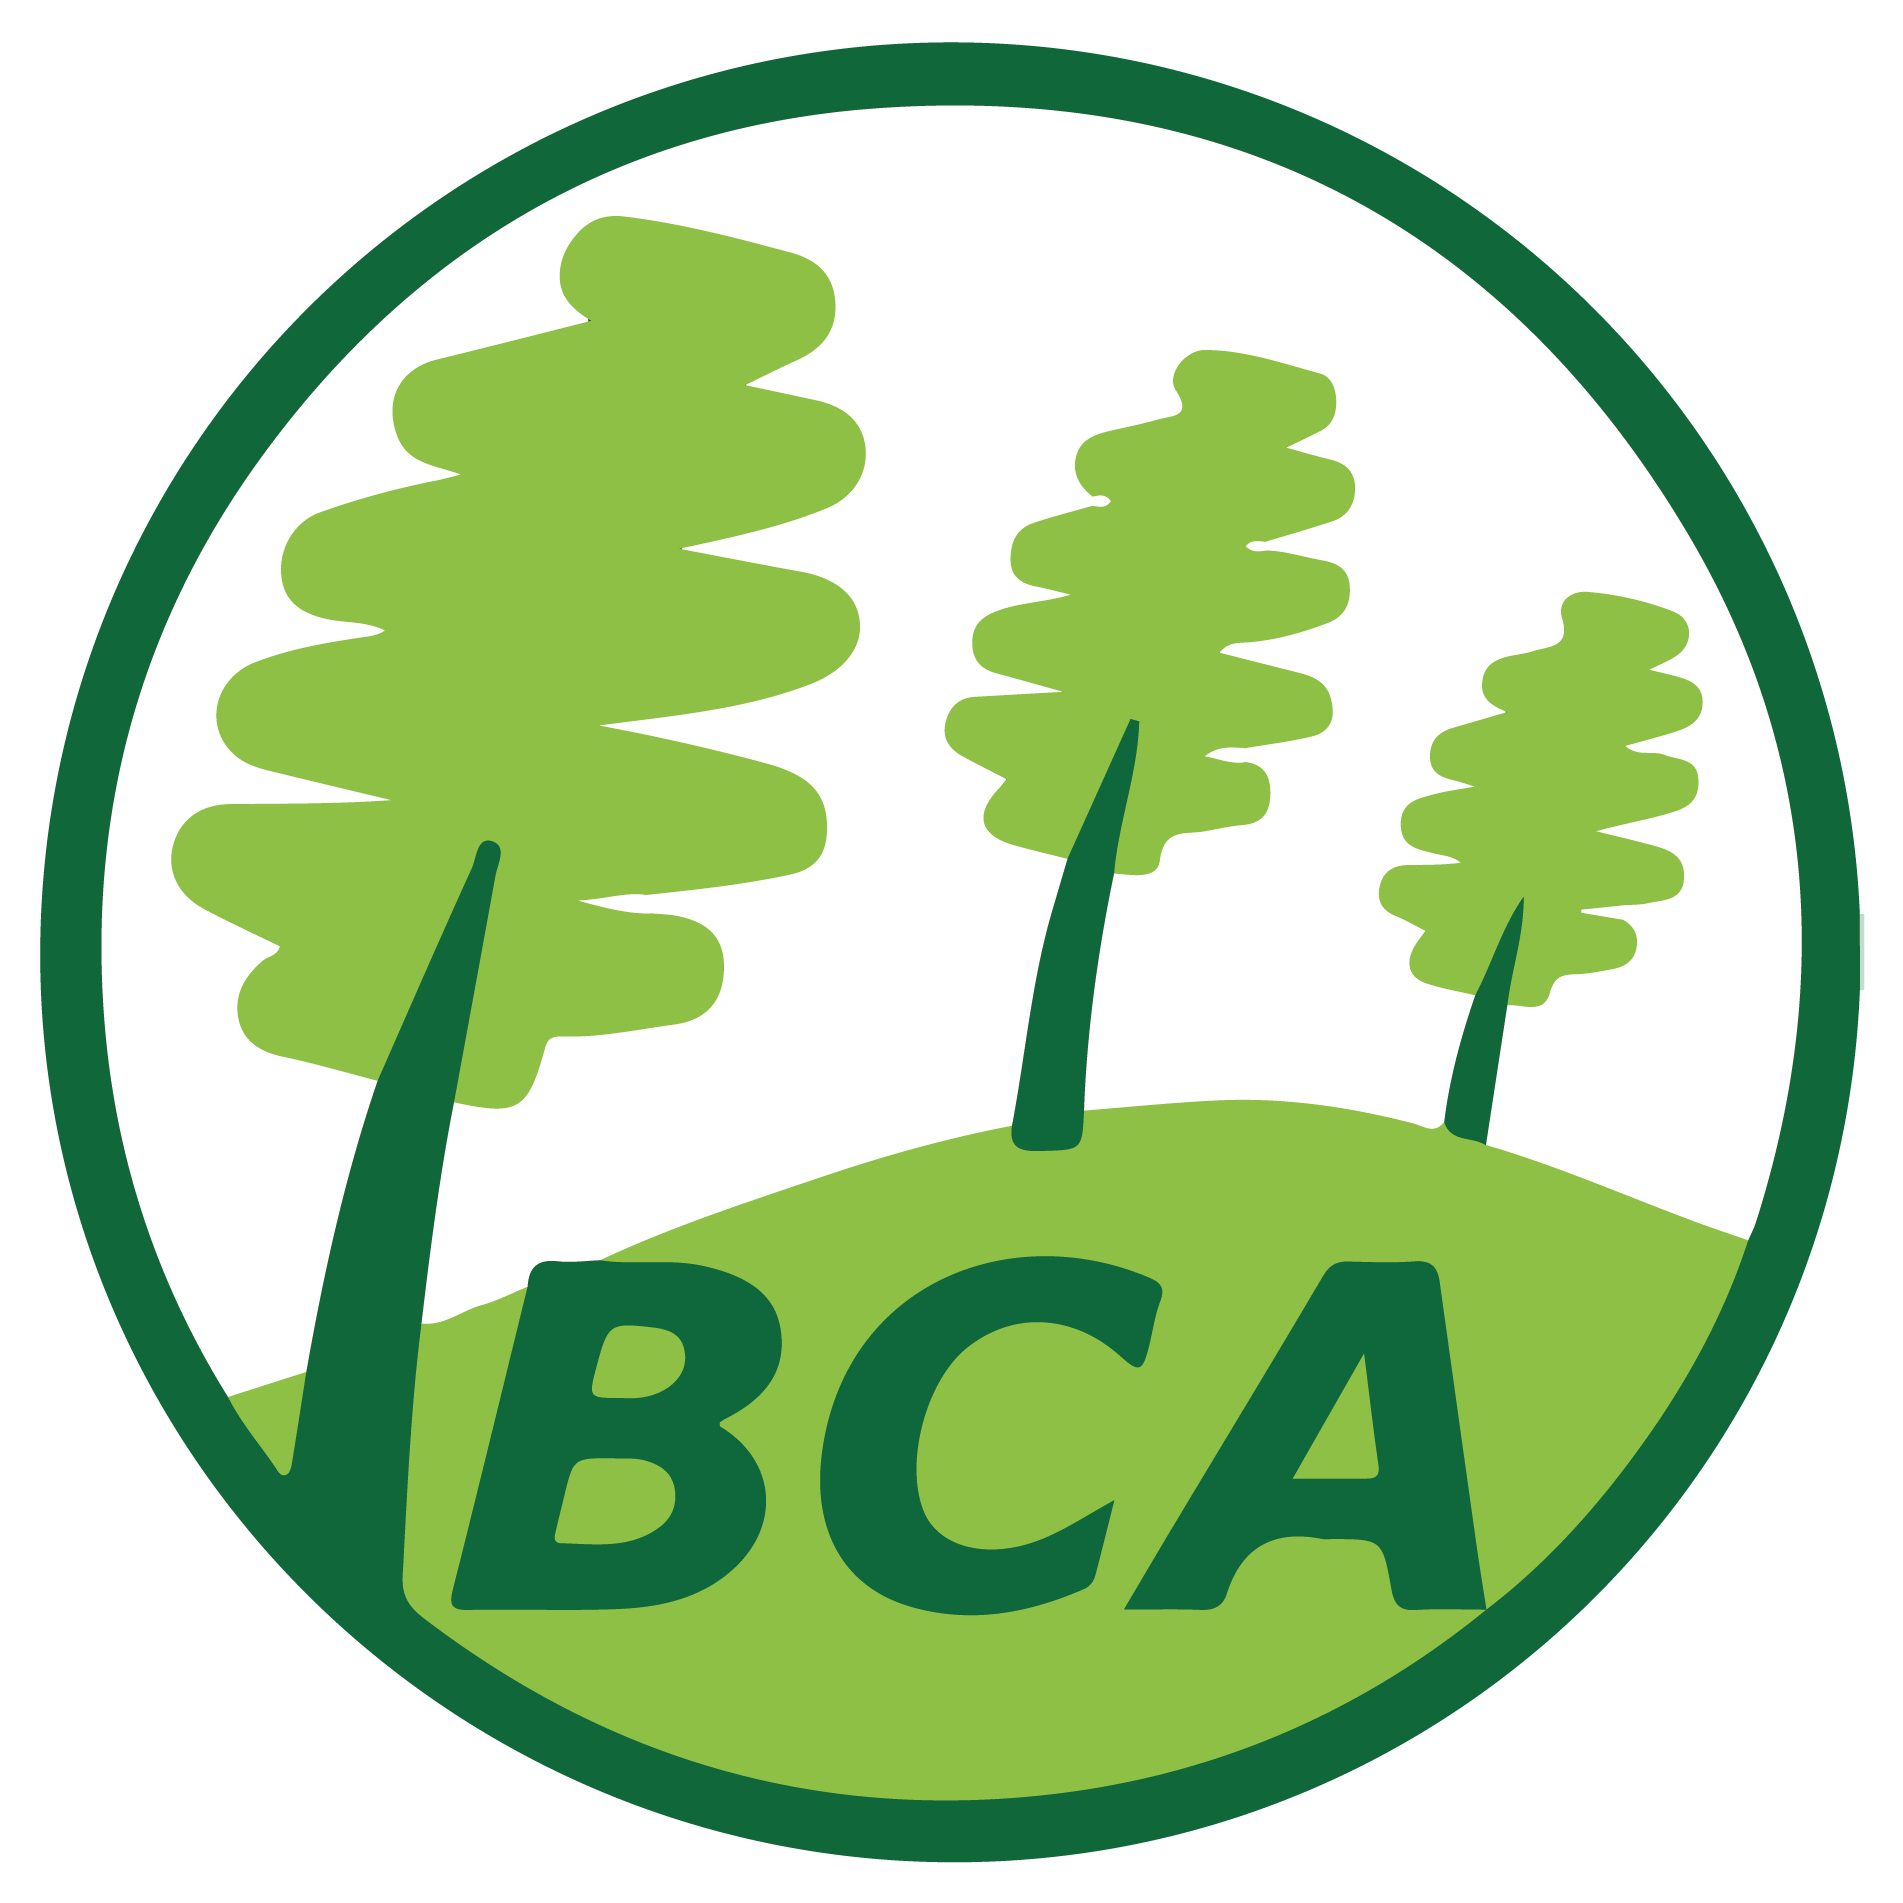 BCA brownsovercommunity.org.uk